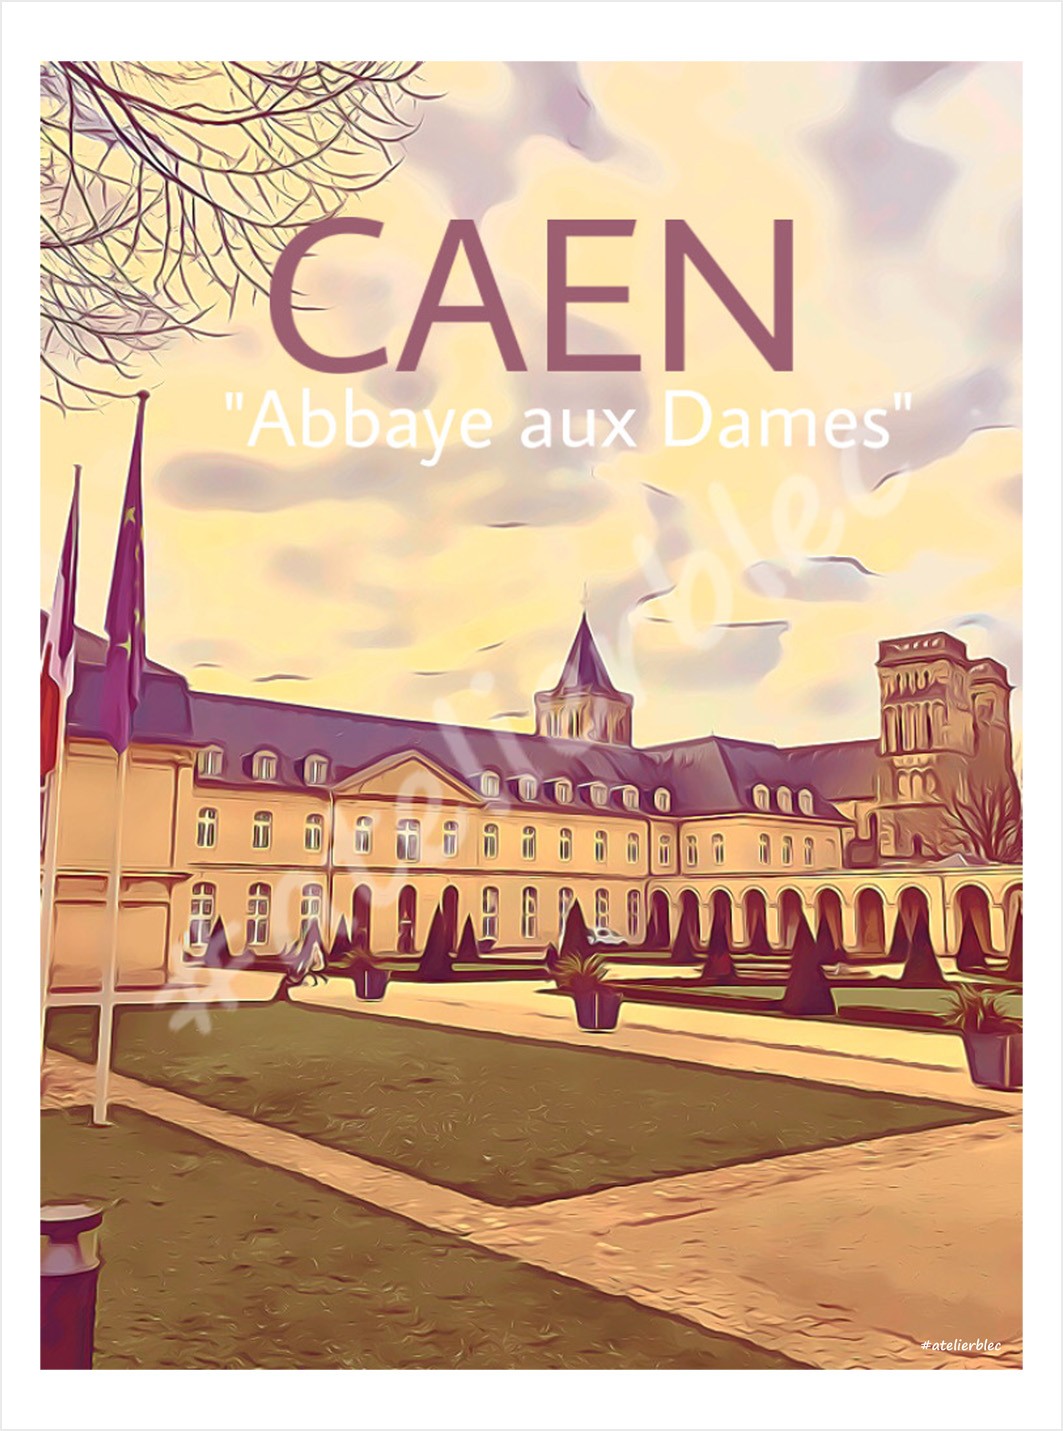 Caen 26 abbaye aux dames